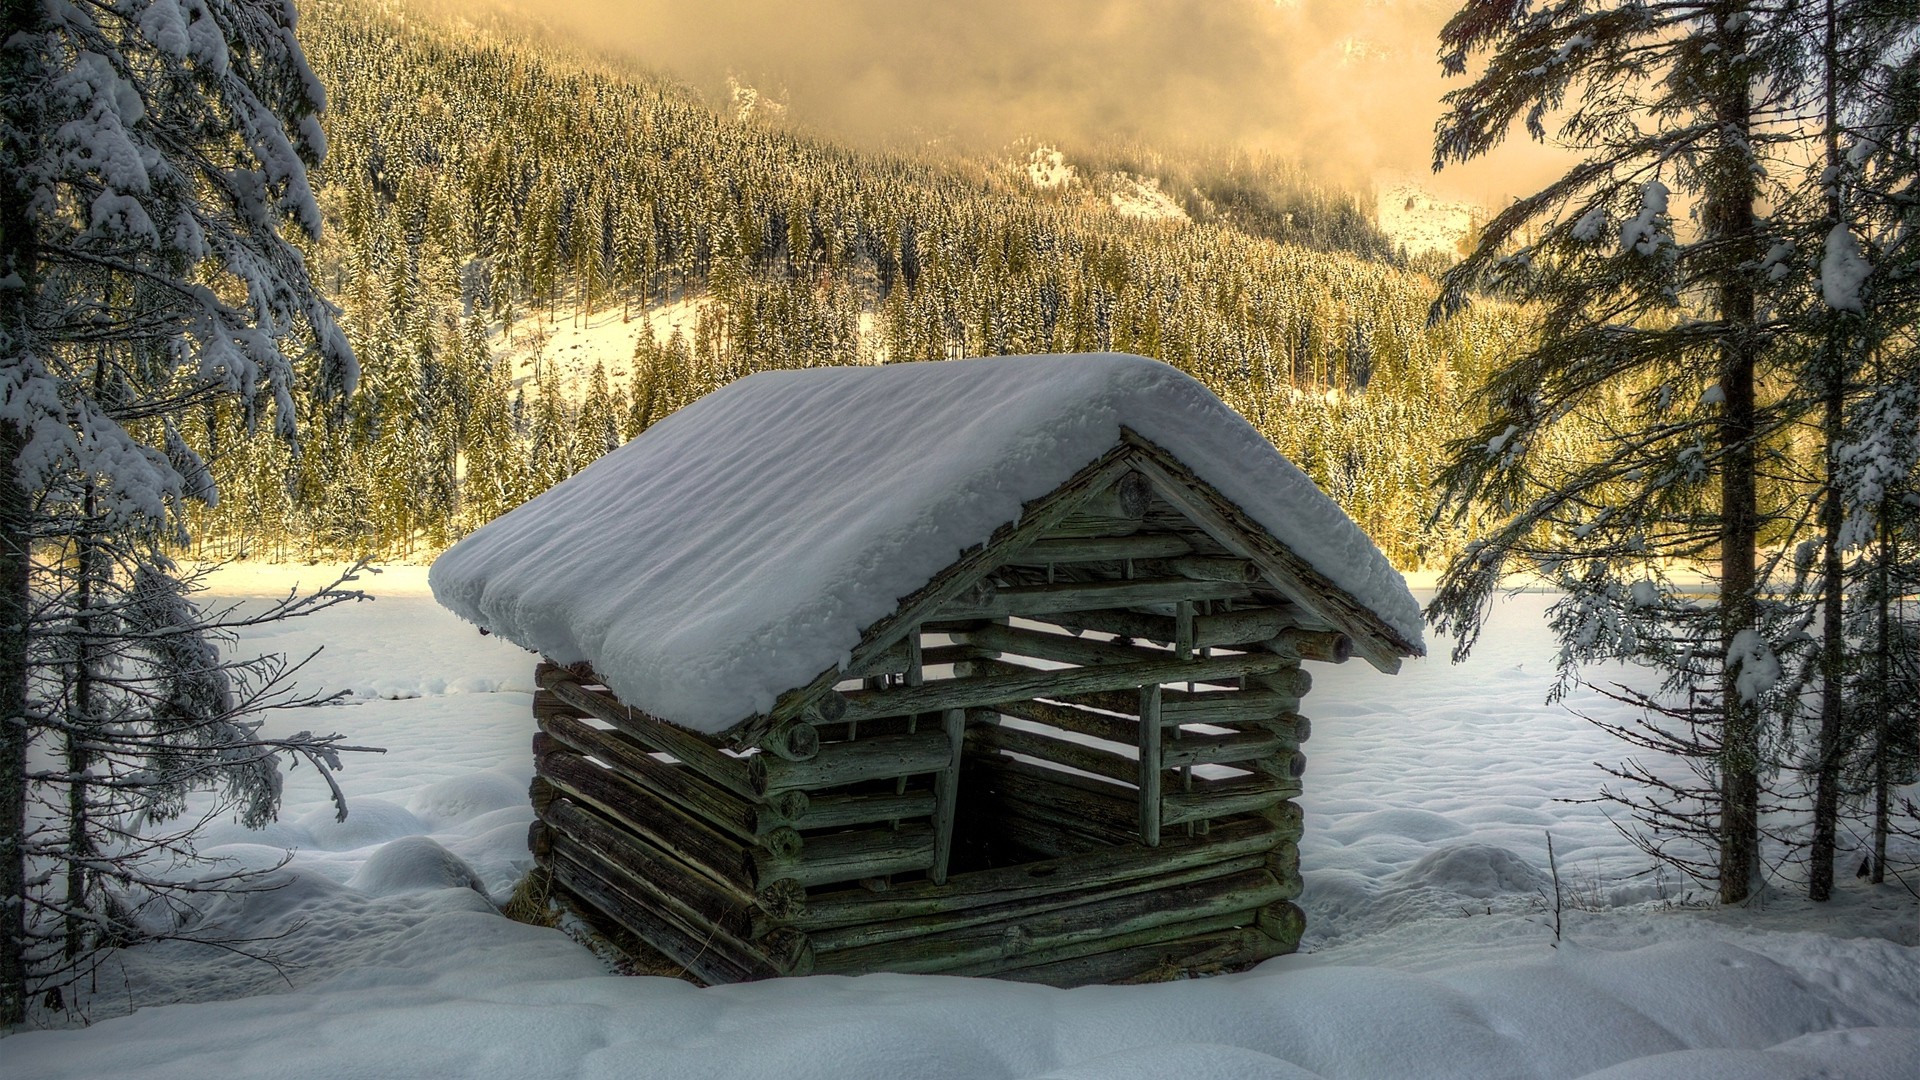 1920x1080 wallpapers: inverno, neve, la casa, costruzione, tronchi, alberi, abete rosso (image)